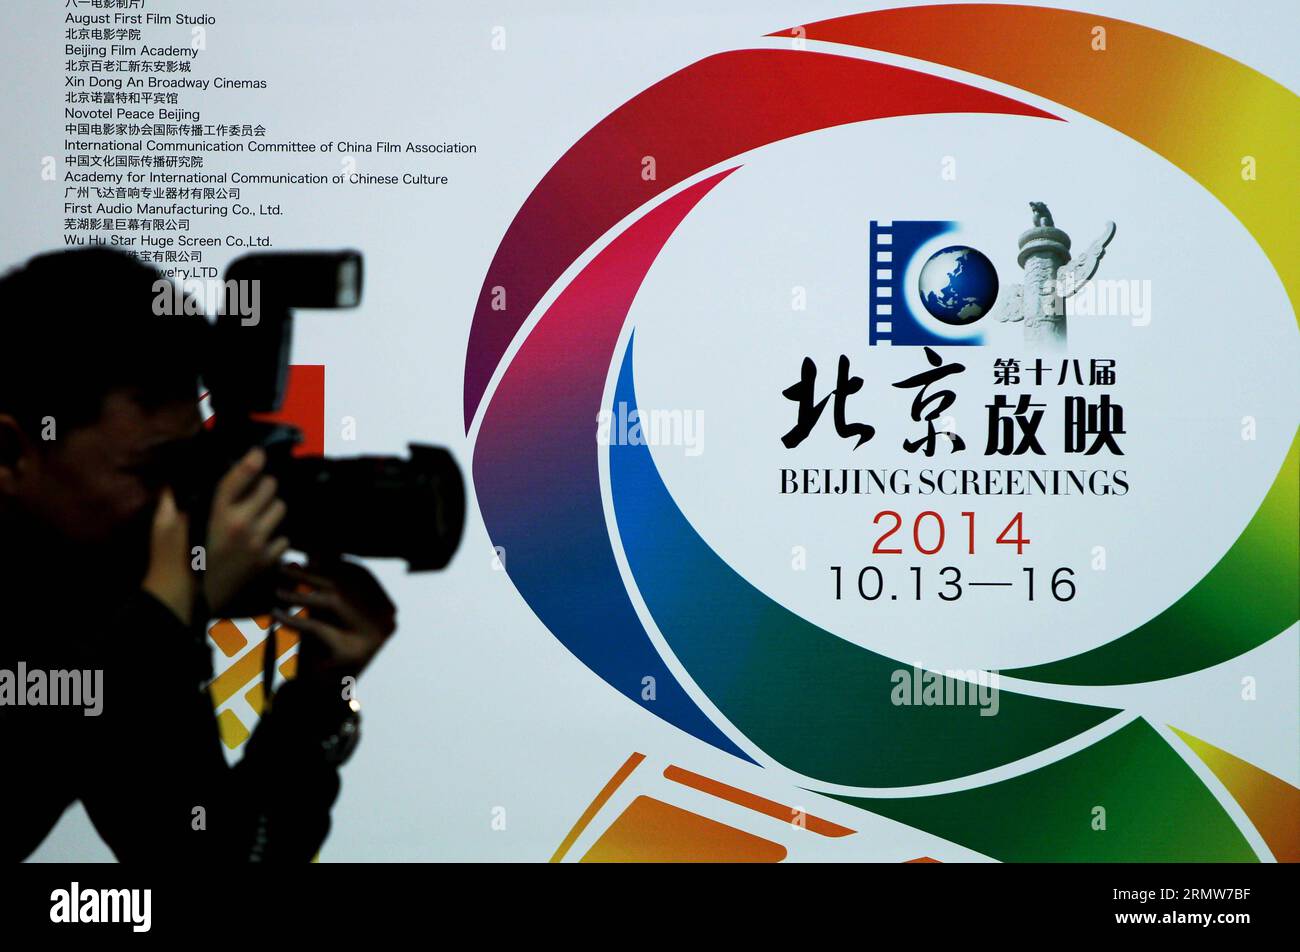 (141009) -- PECHINO, 9 ottobre 2014 -- Un giornalista scatta foto durante una conferenza stampa delle 18 proiezioni di Pechino tenutasi a Pechino, capitale della Cina, 9 ottobre 2014. La 18a Pechino Screenings aprirà dal 13 al 16 ottobre a Pechino. Saranno proiettati 60 eccellenti film cinesi che segnano i successi del film cinese. ) (Wyl) CHINA-BEIJING-18TH BEIJING SCREENING (CN) GaoxJing PUBLICATIONxNOTxINxCHN Beijing OCT 9 2014 un giornalista scatta foto IN una conferenza stampa del 18th Beijing Screening Hero a Pechino capitale della Cina ottobre 9 2014 la 18th Beijing Screening si aprirà dal 13 ottobre Foto Stock